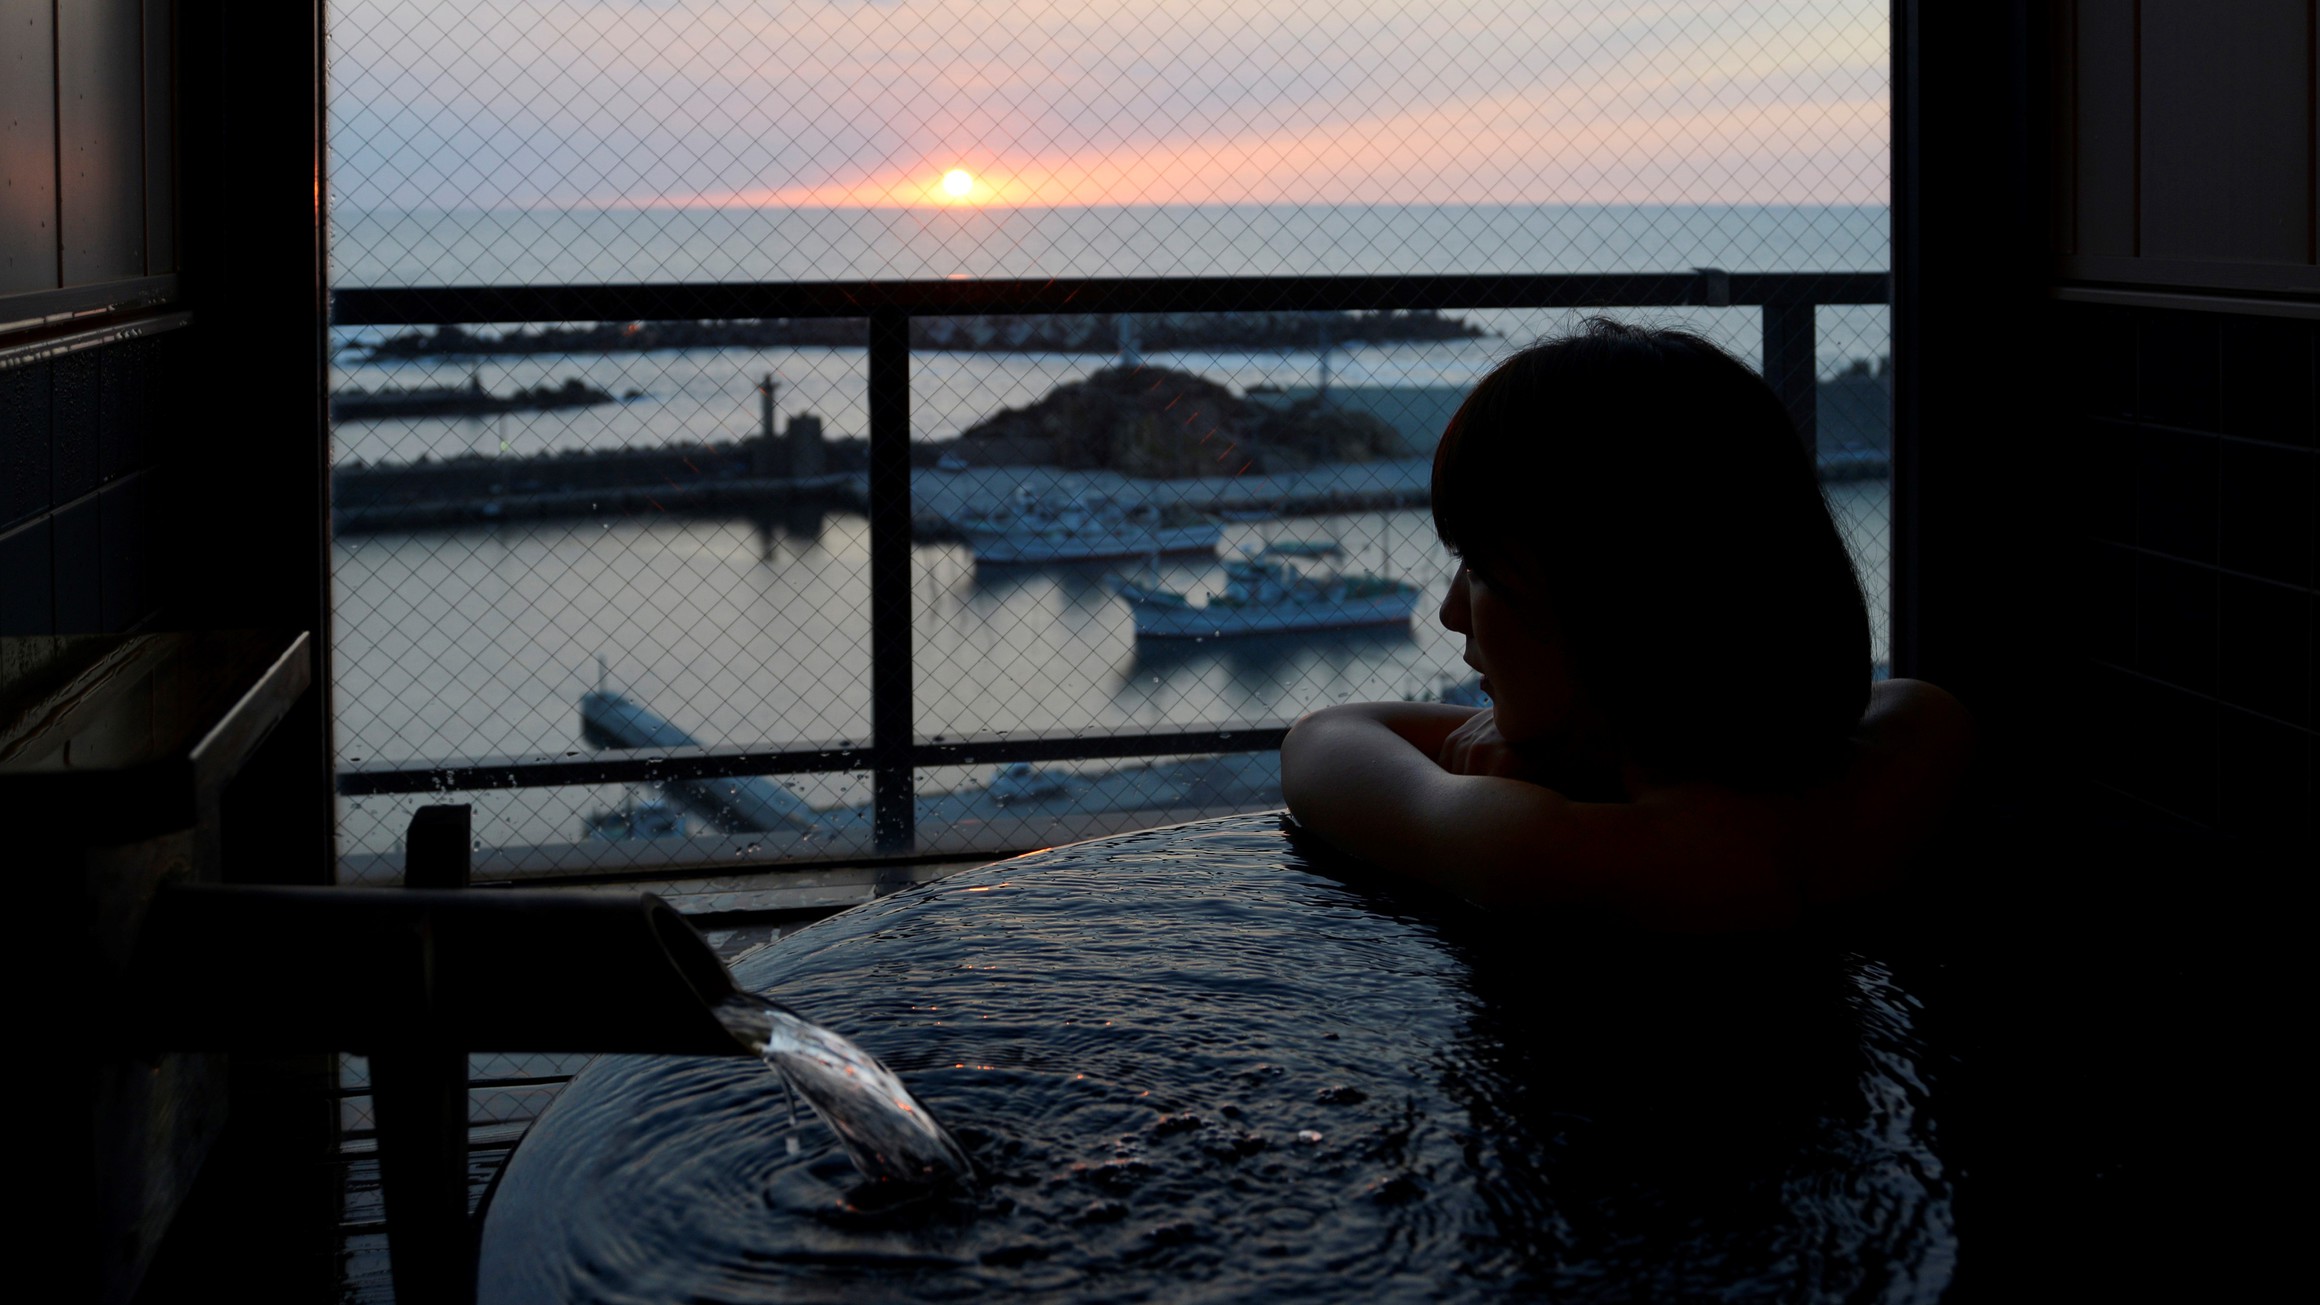 【客室展望風呂】客室の展望風呂からも美しい日本海に沈む夕景を眺めて…;